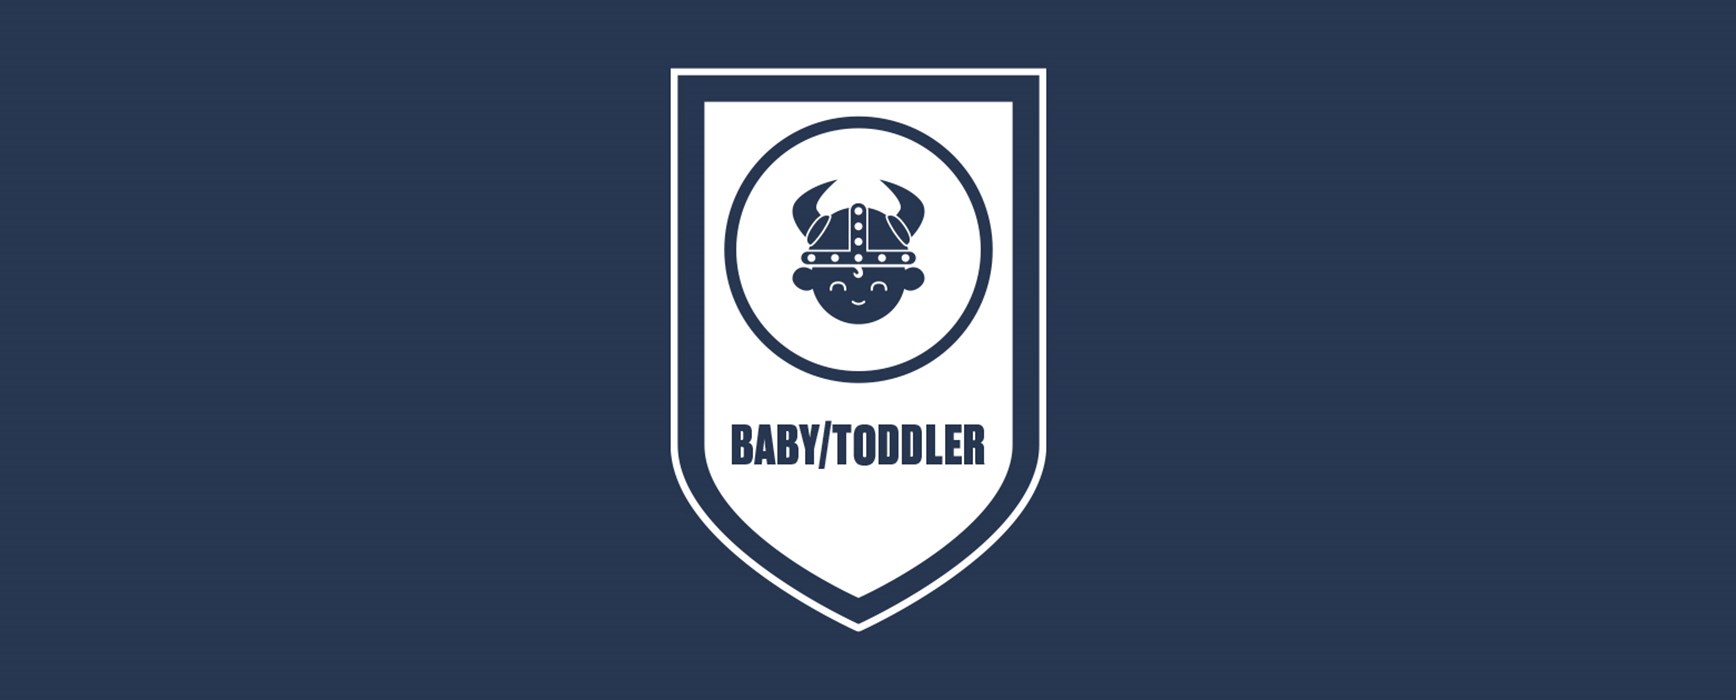 Baby/Toddler